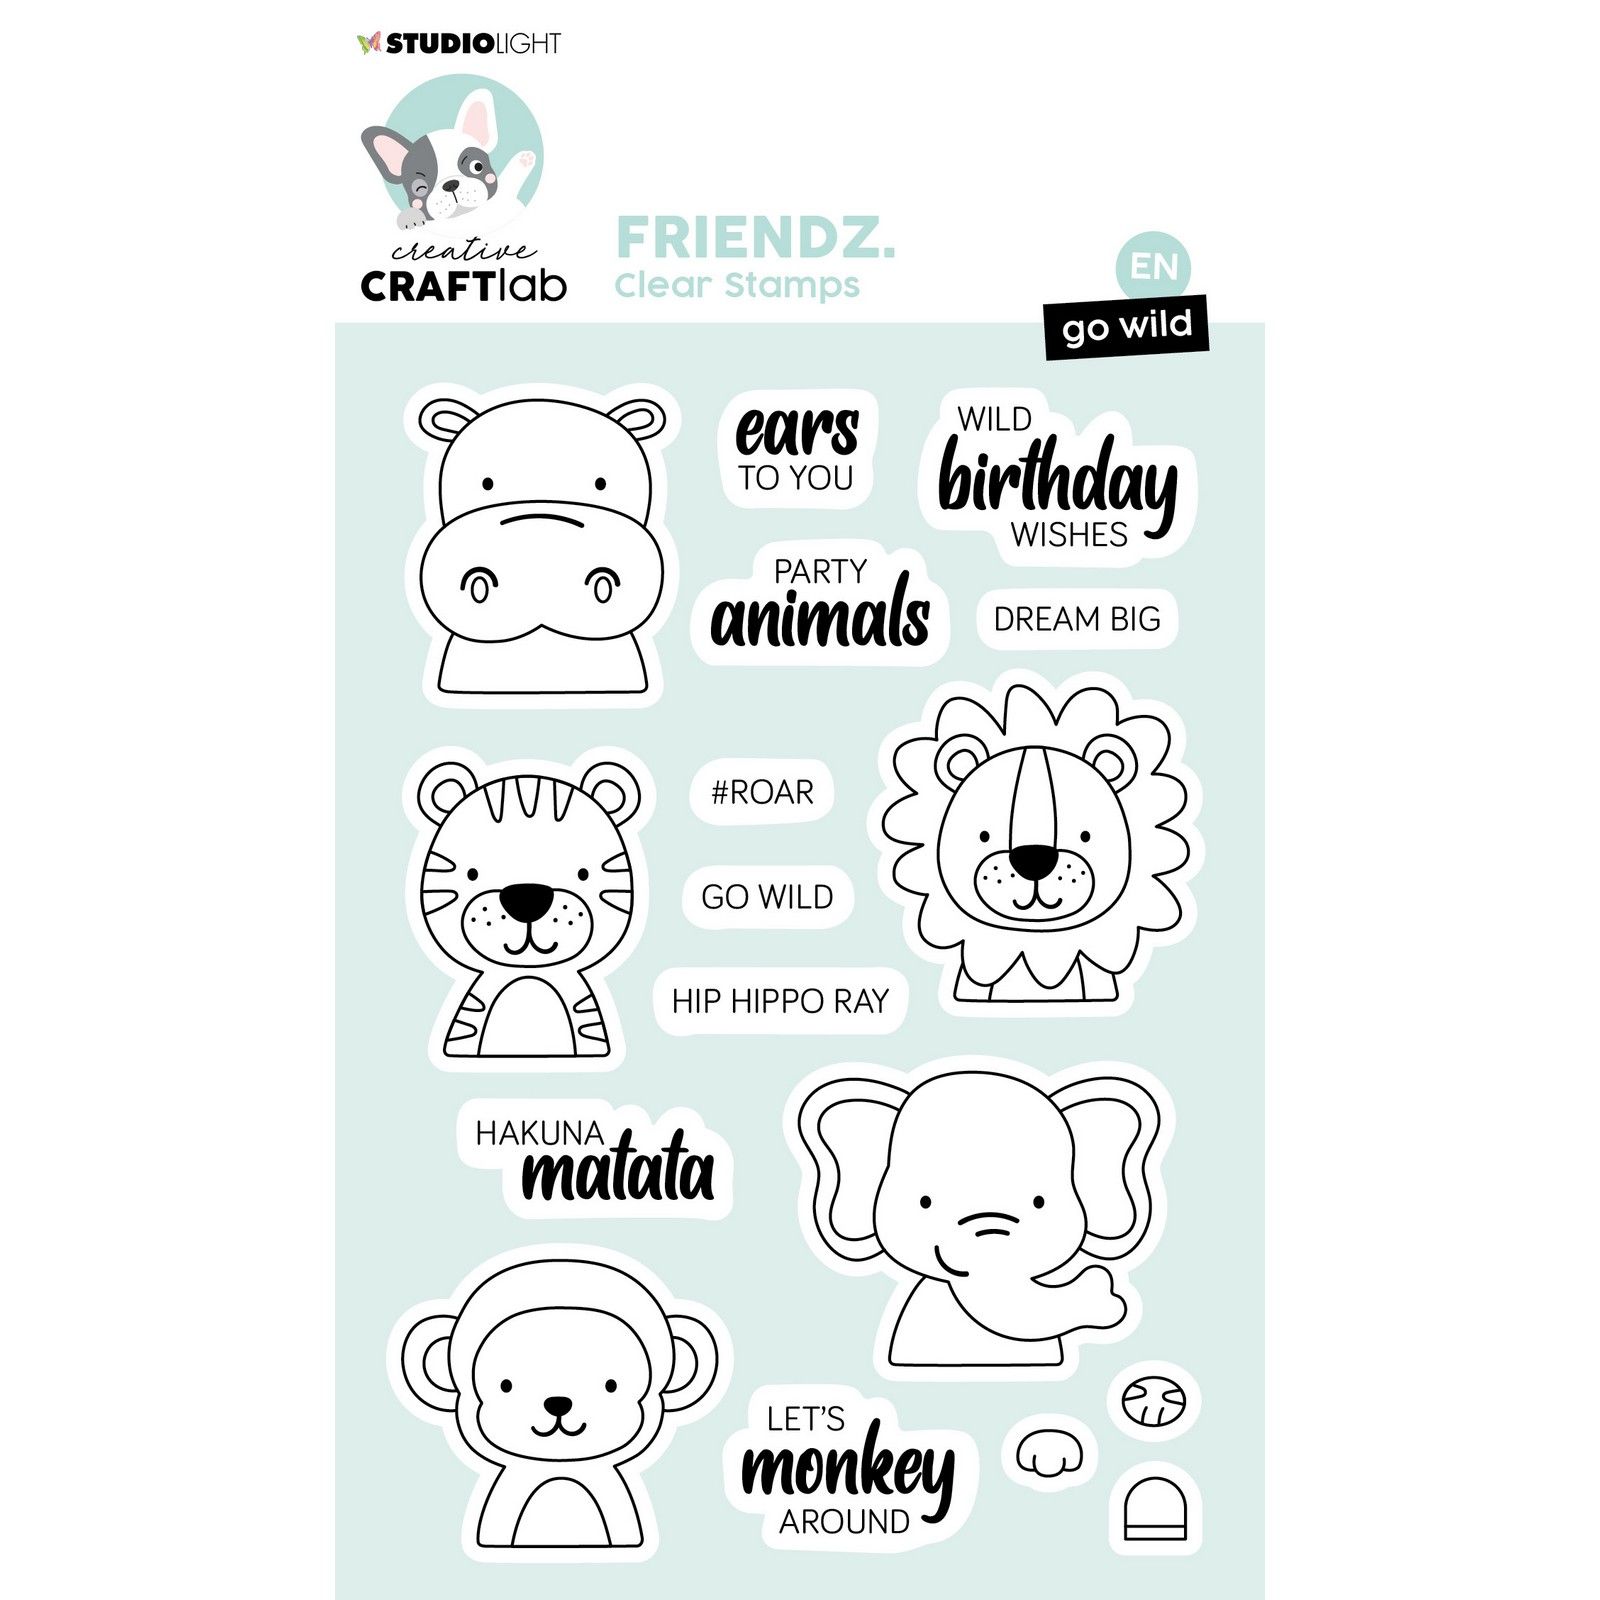 Creative Craftlab • Friendz Clear Stamp Go Wild